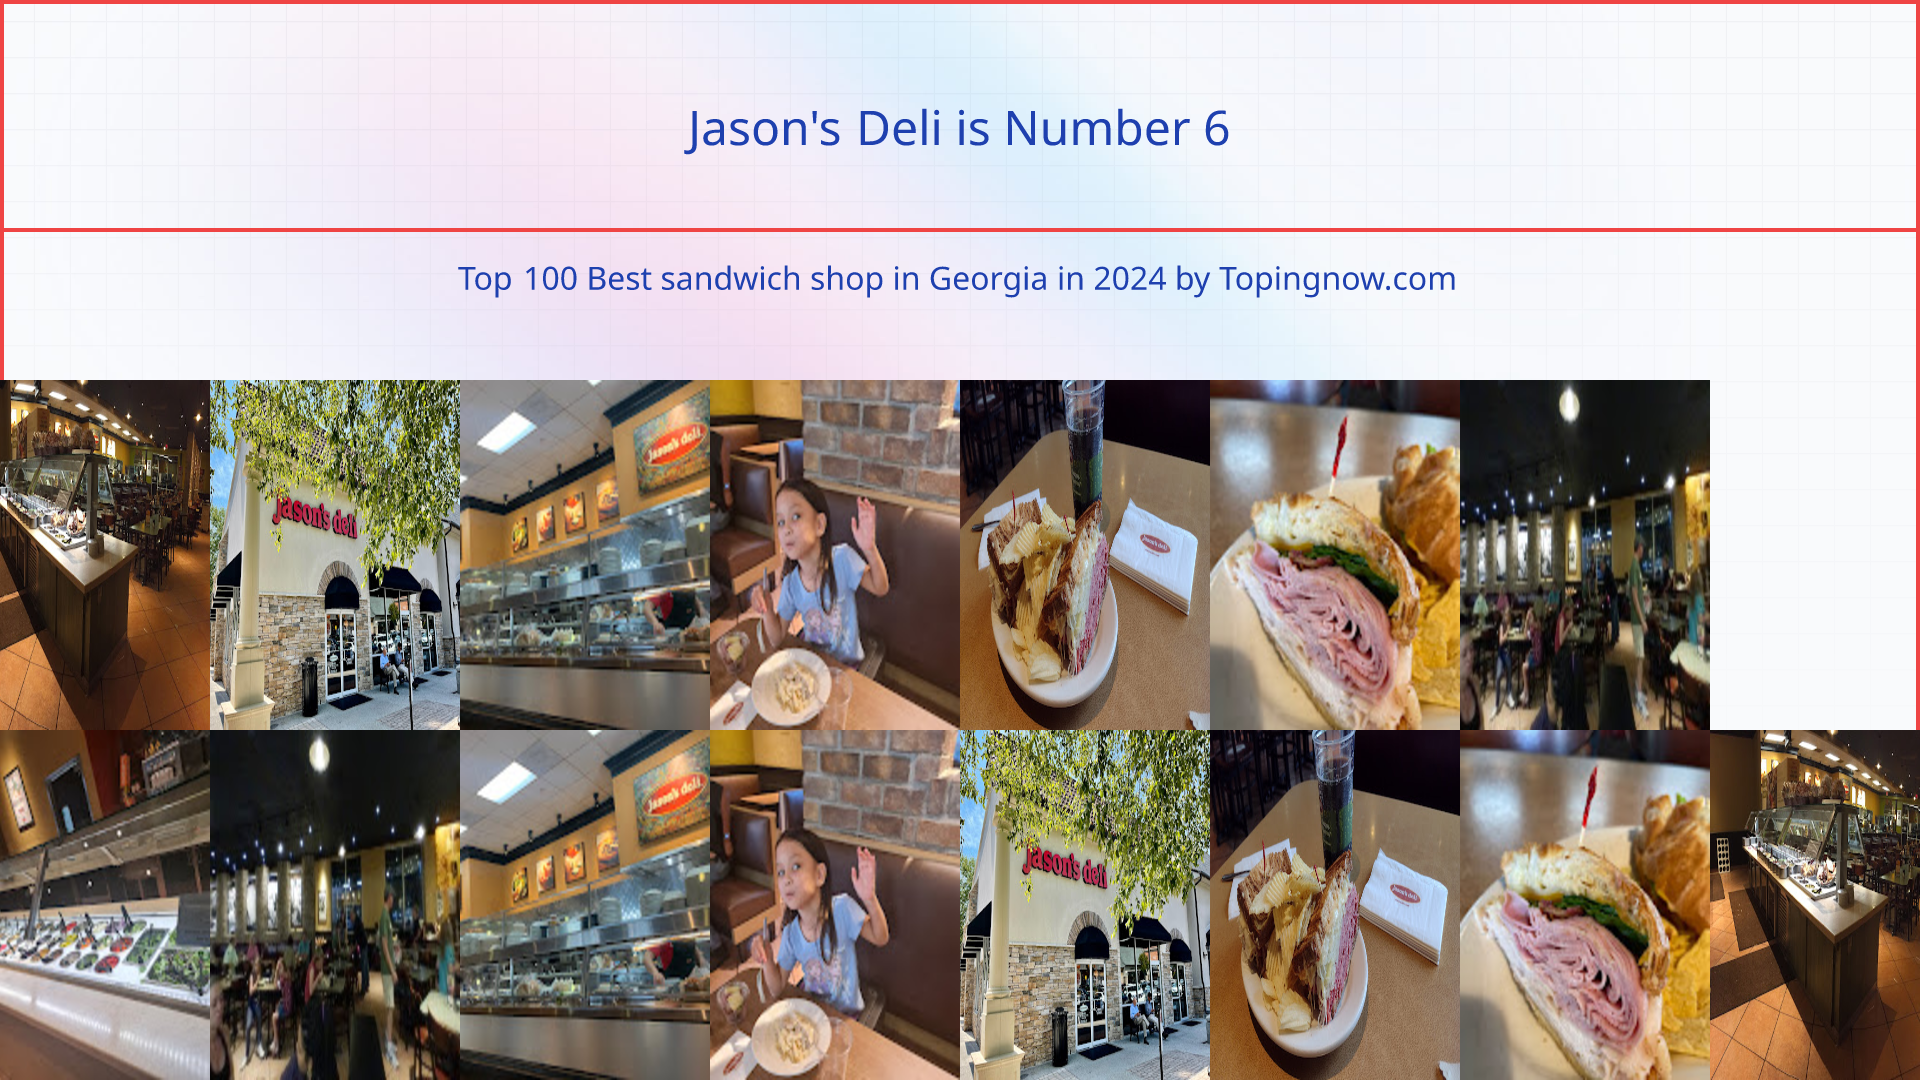 Jason's Deli: Top 100 Best sandwich shop in Georgia in 2024